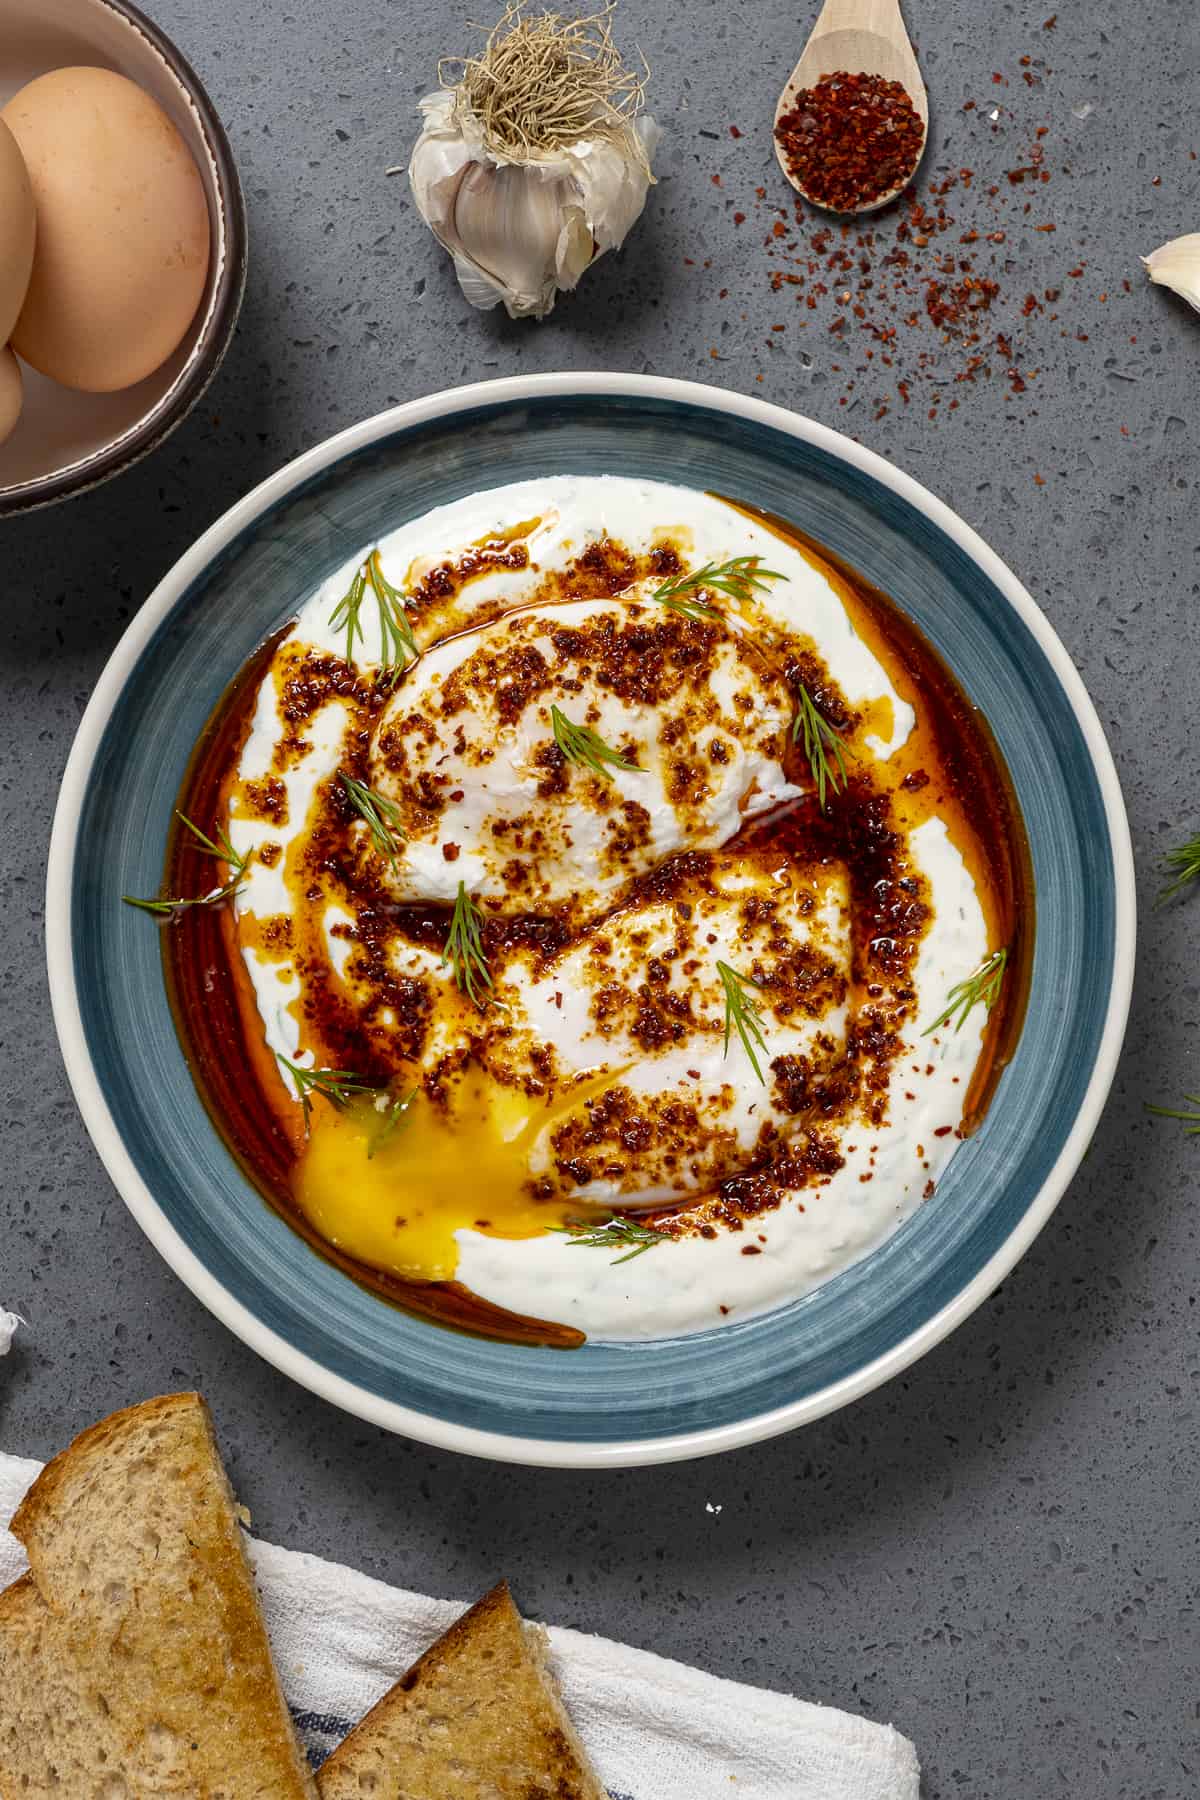 希腊酸奶上的水煮蛋，配上香料黄油酱，放在一个蓝色的碗里。蒜瓣，烤面包，胡椒片和带壳的鸡蛋放在旁边。